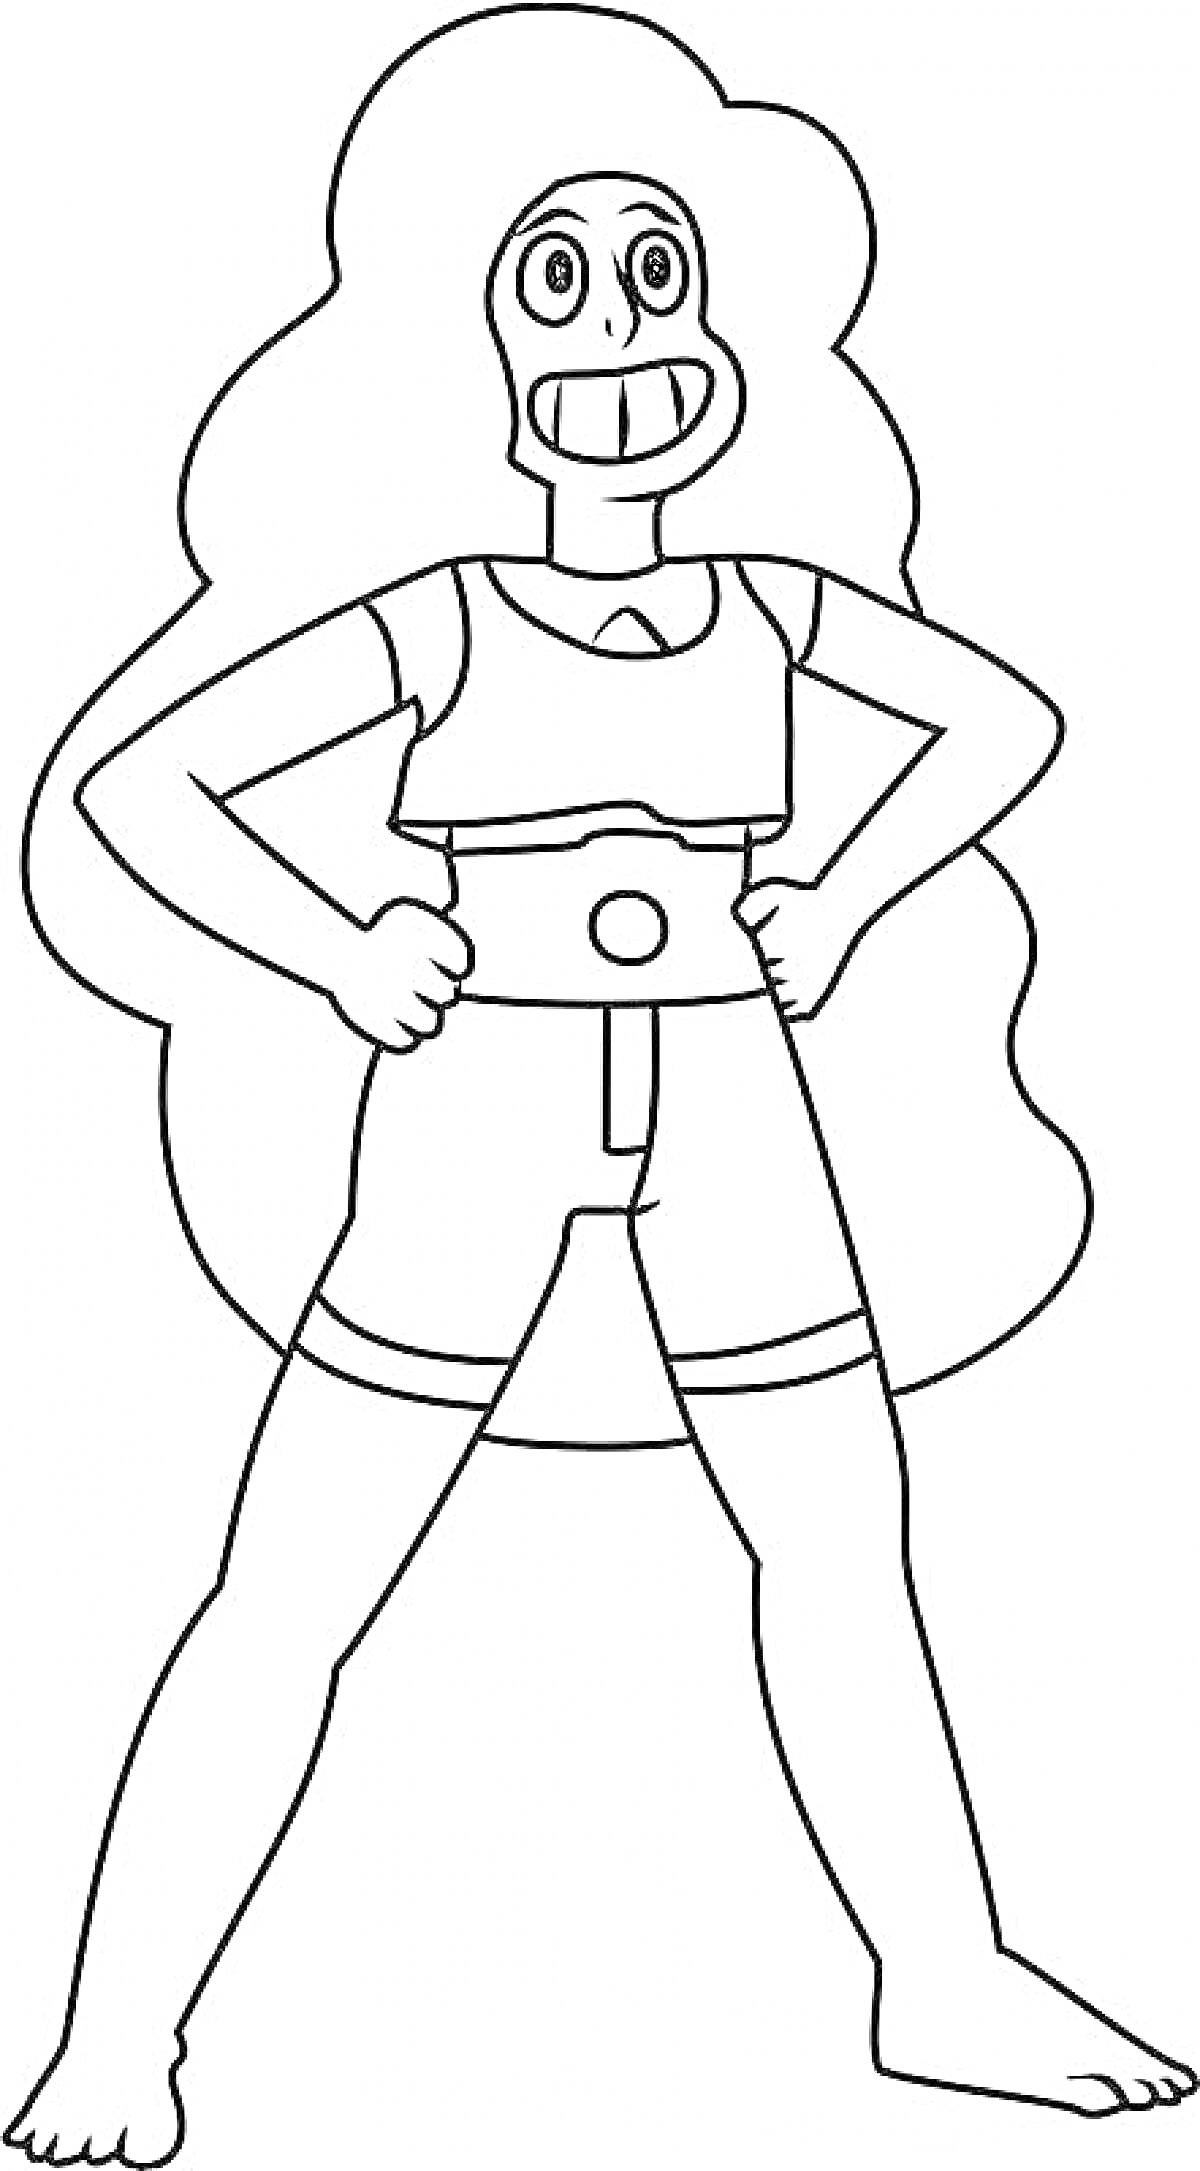 Раскраска персонажа Вселенной Стивена с длинными волосами и улыбкой, в спортивной одежде